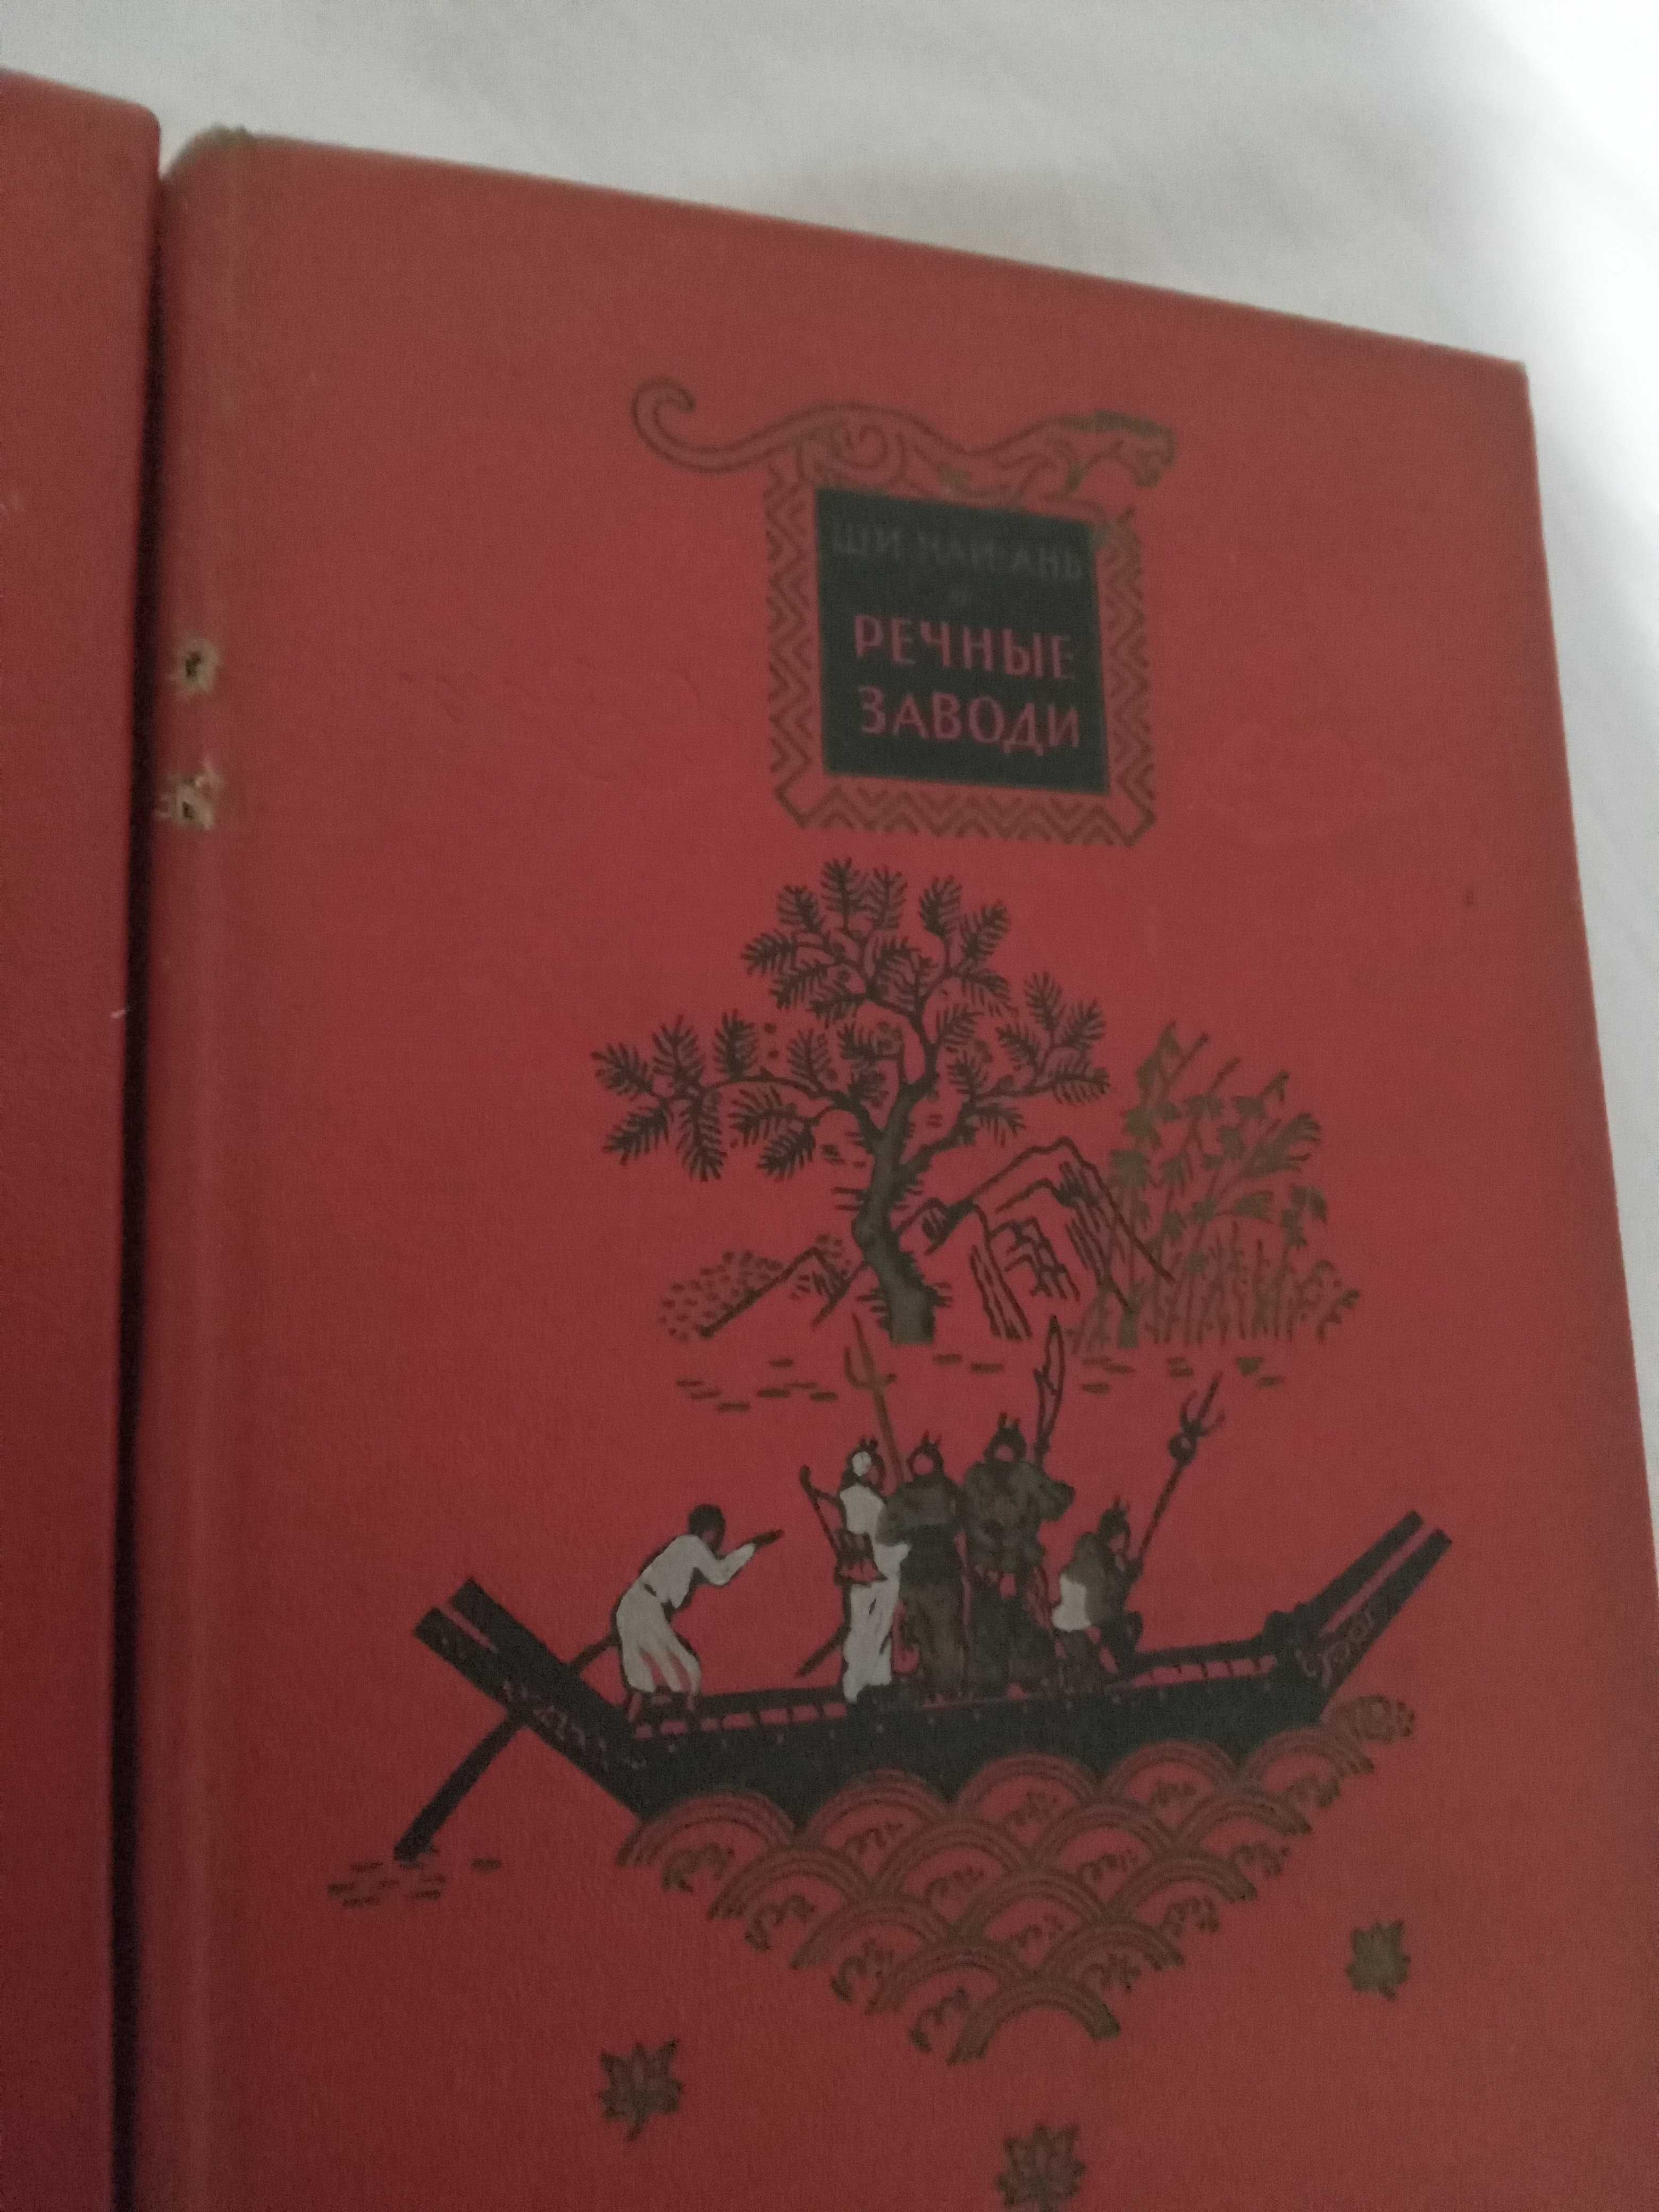 Ши Най-Ань.Речные заводи.Исторический роман в 2 томах.1955 г.